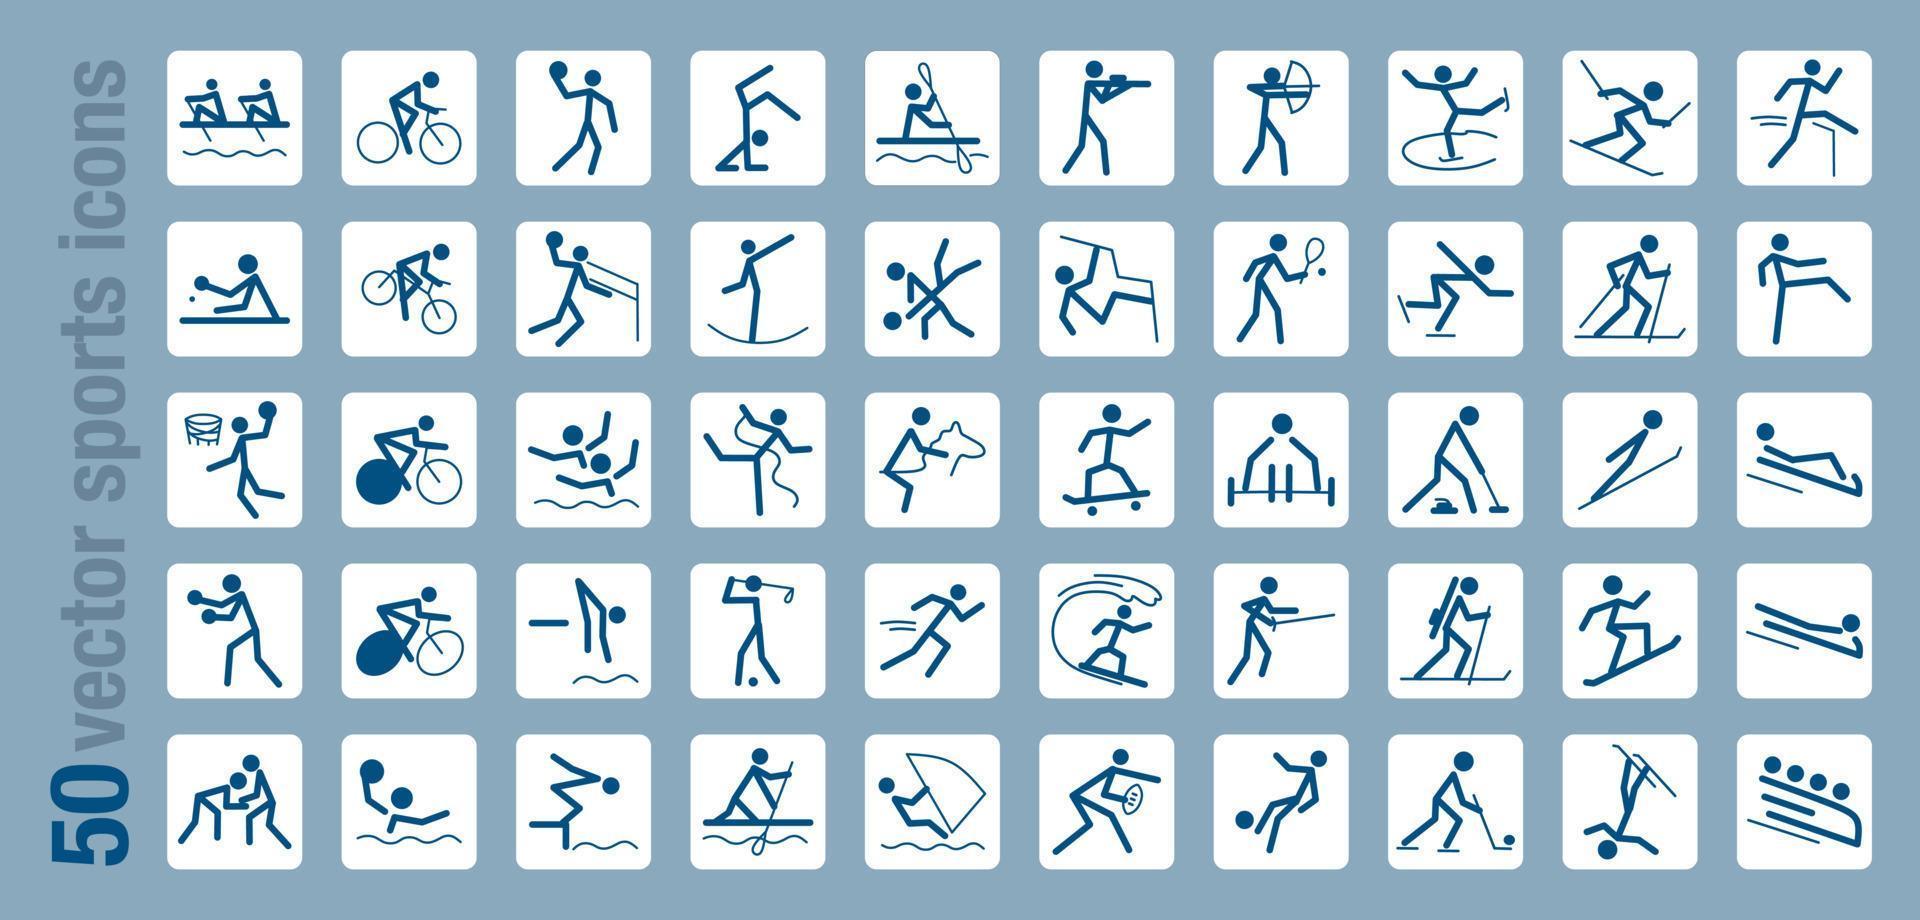 um conjunto de 50 ícones dedicados a esportes e jogos, ilustração vetorial em estilo simples vetor